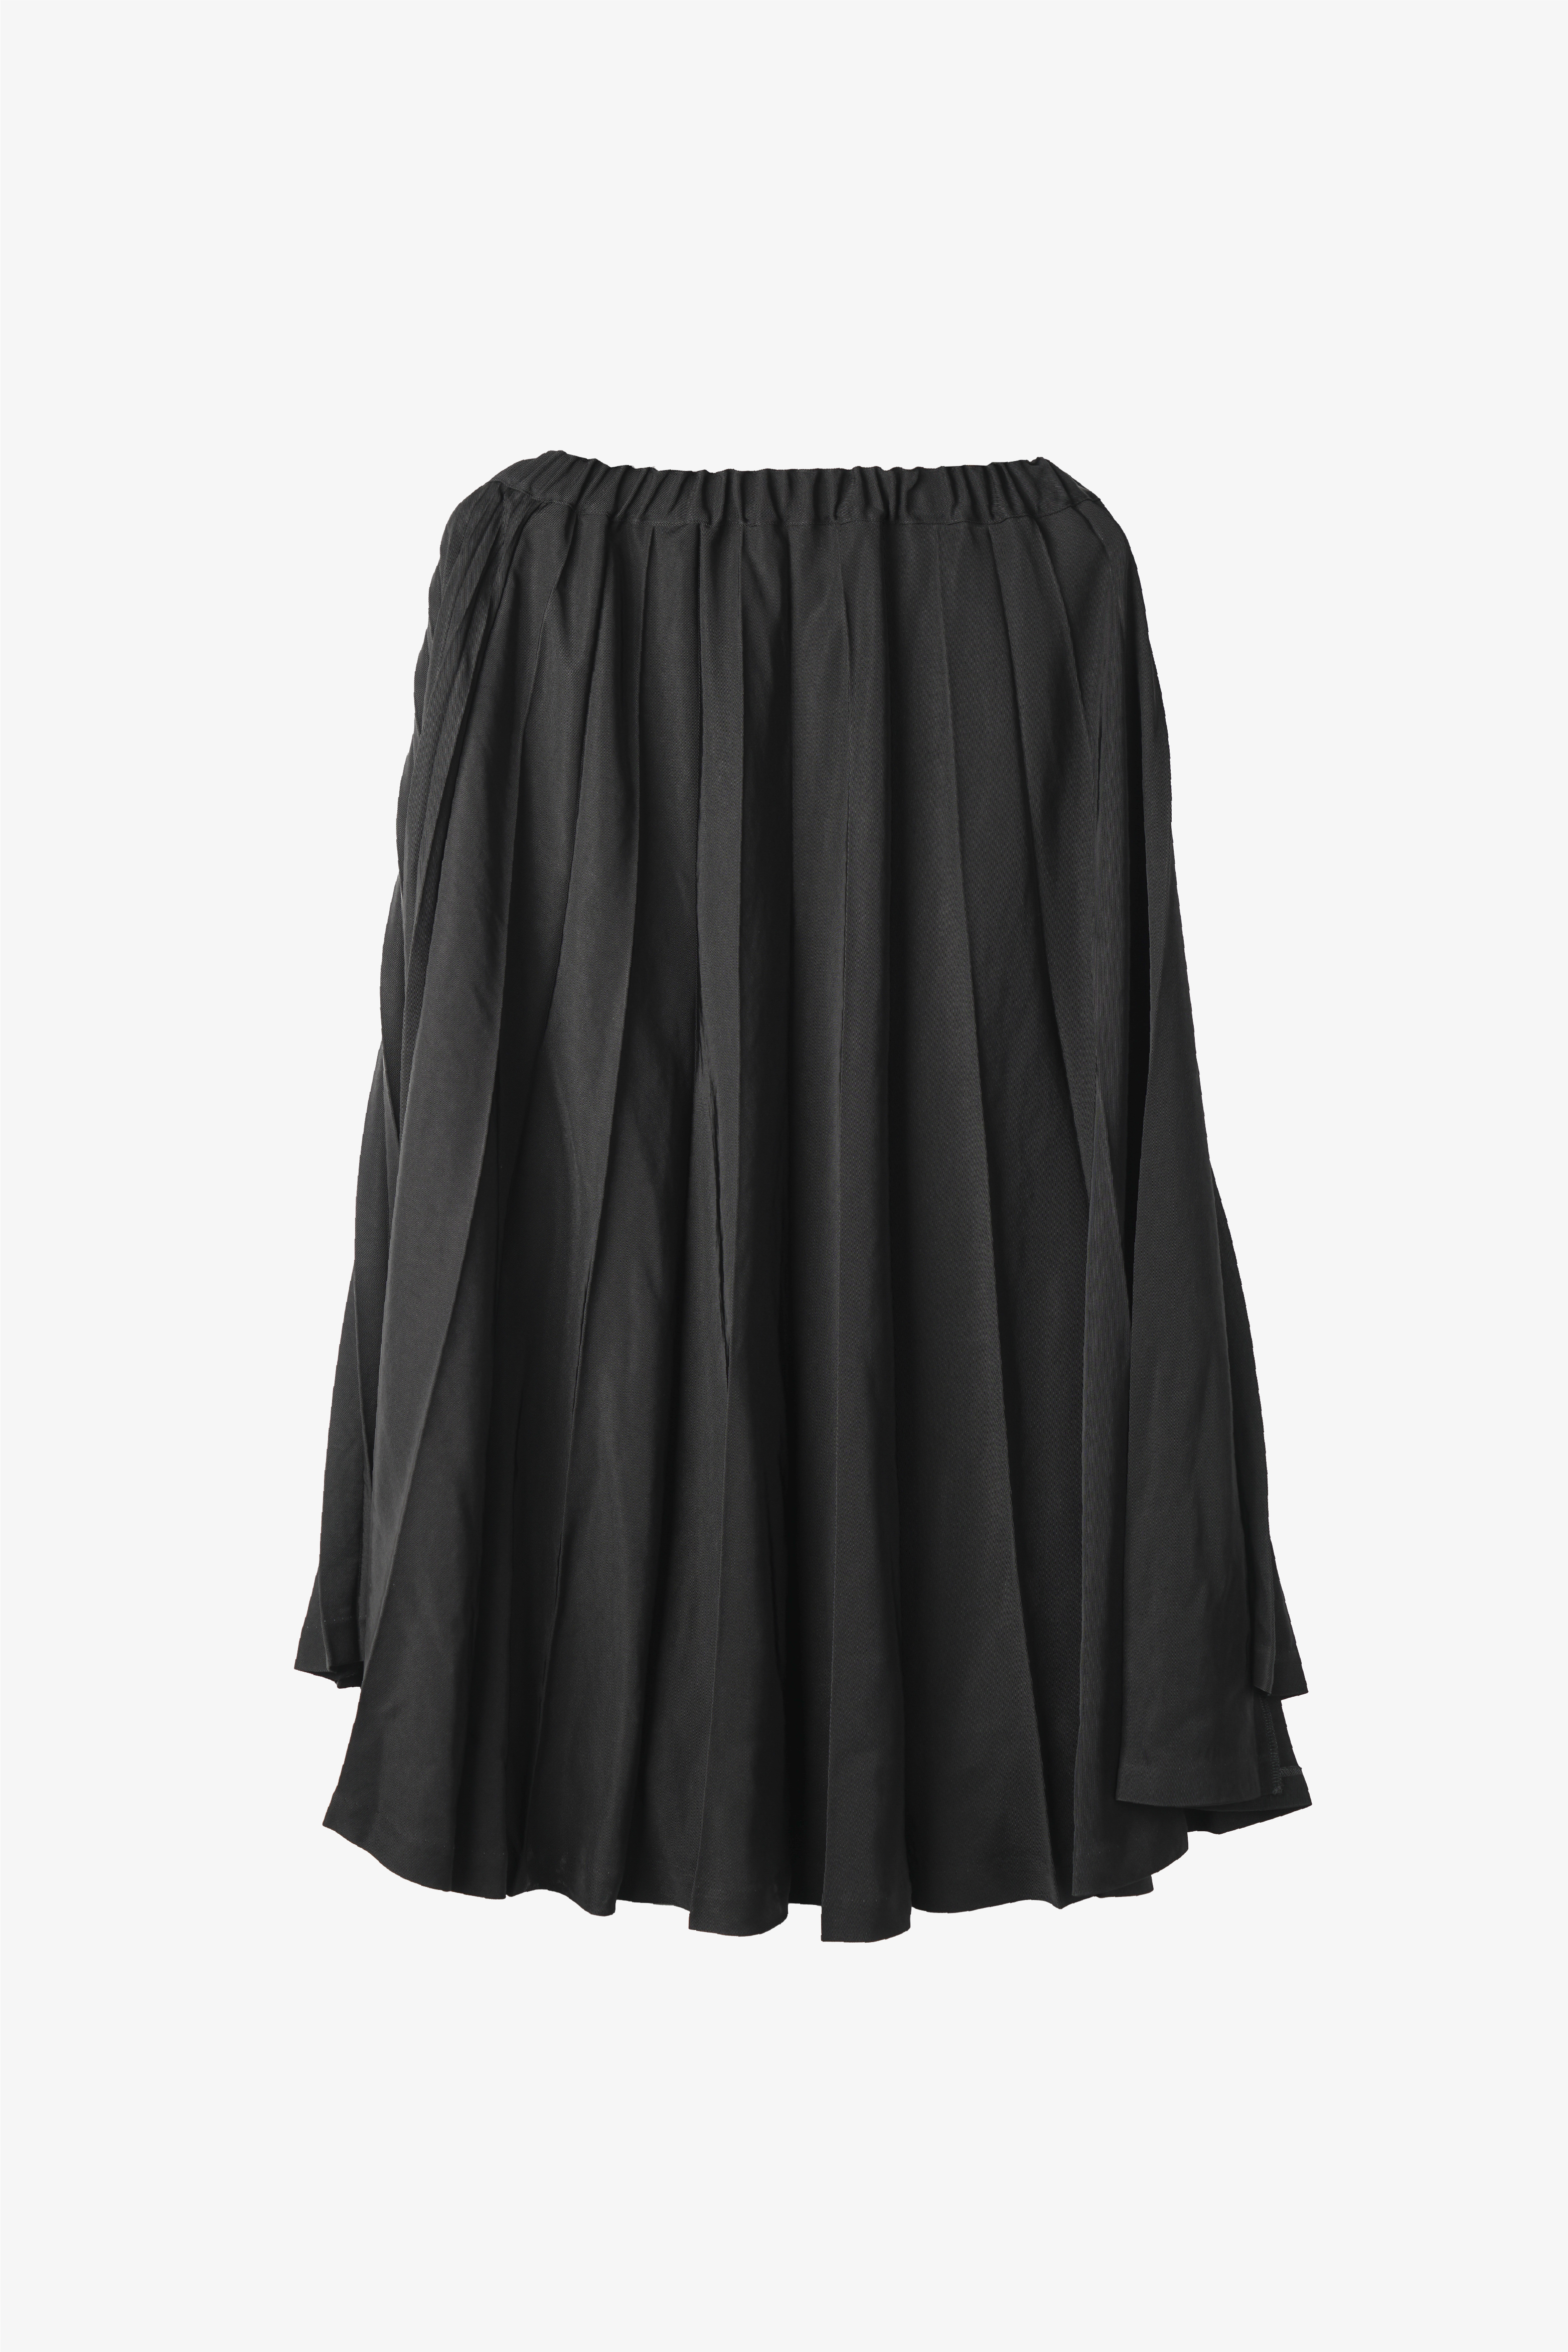 Selectshop FRAME - COMME DES GARÇONS BLACK Skirt Bottoms Dubai